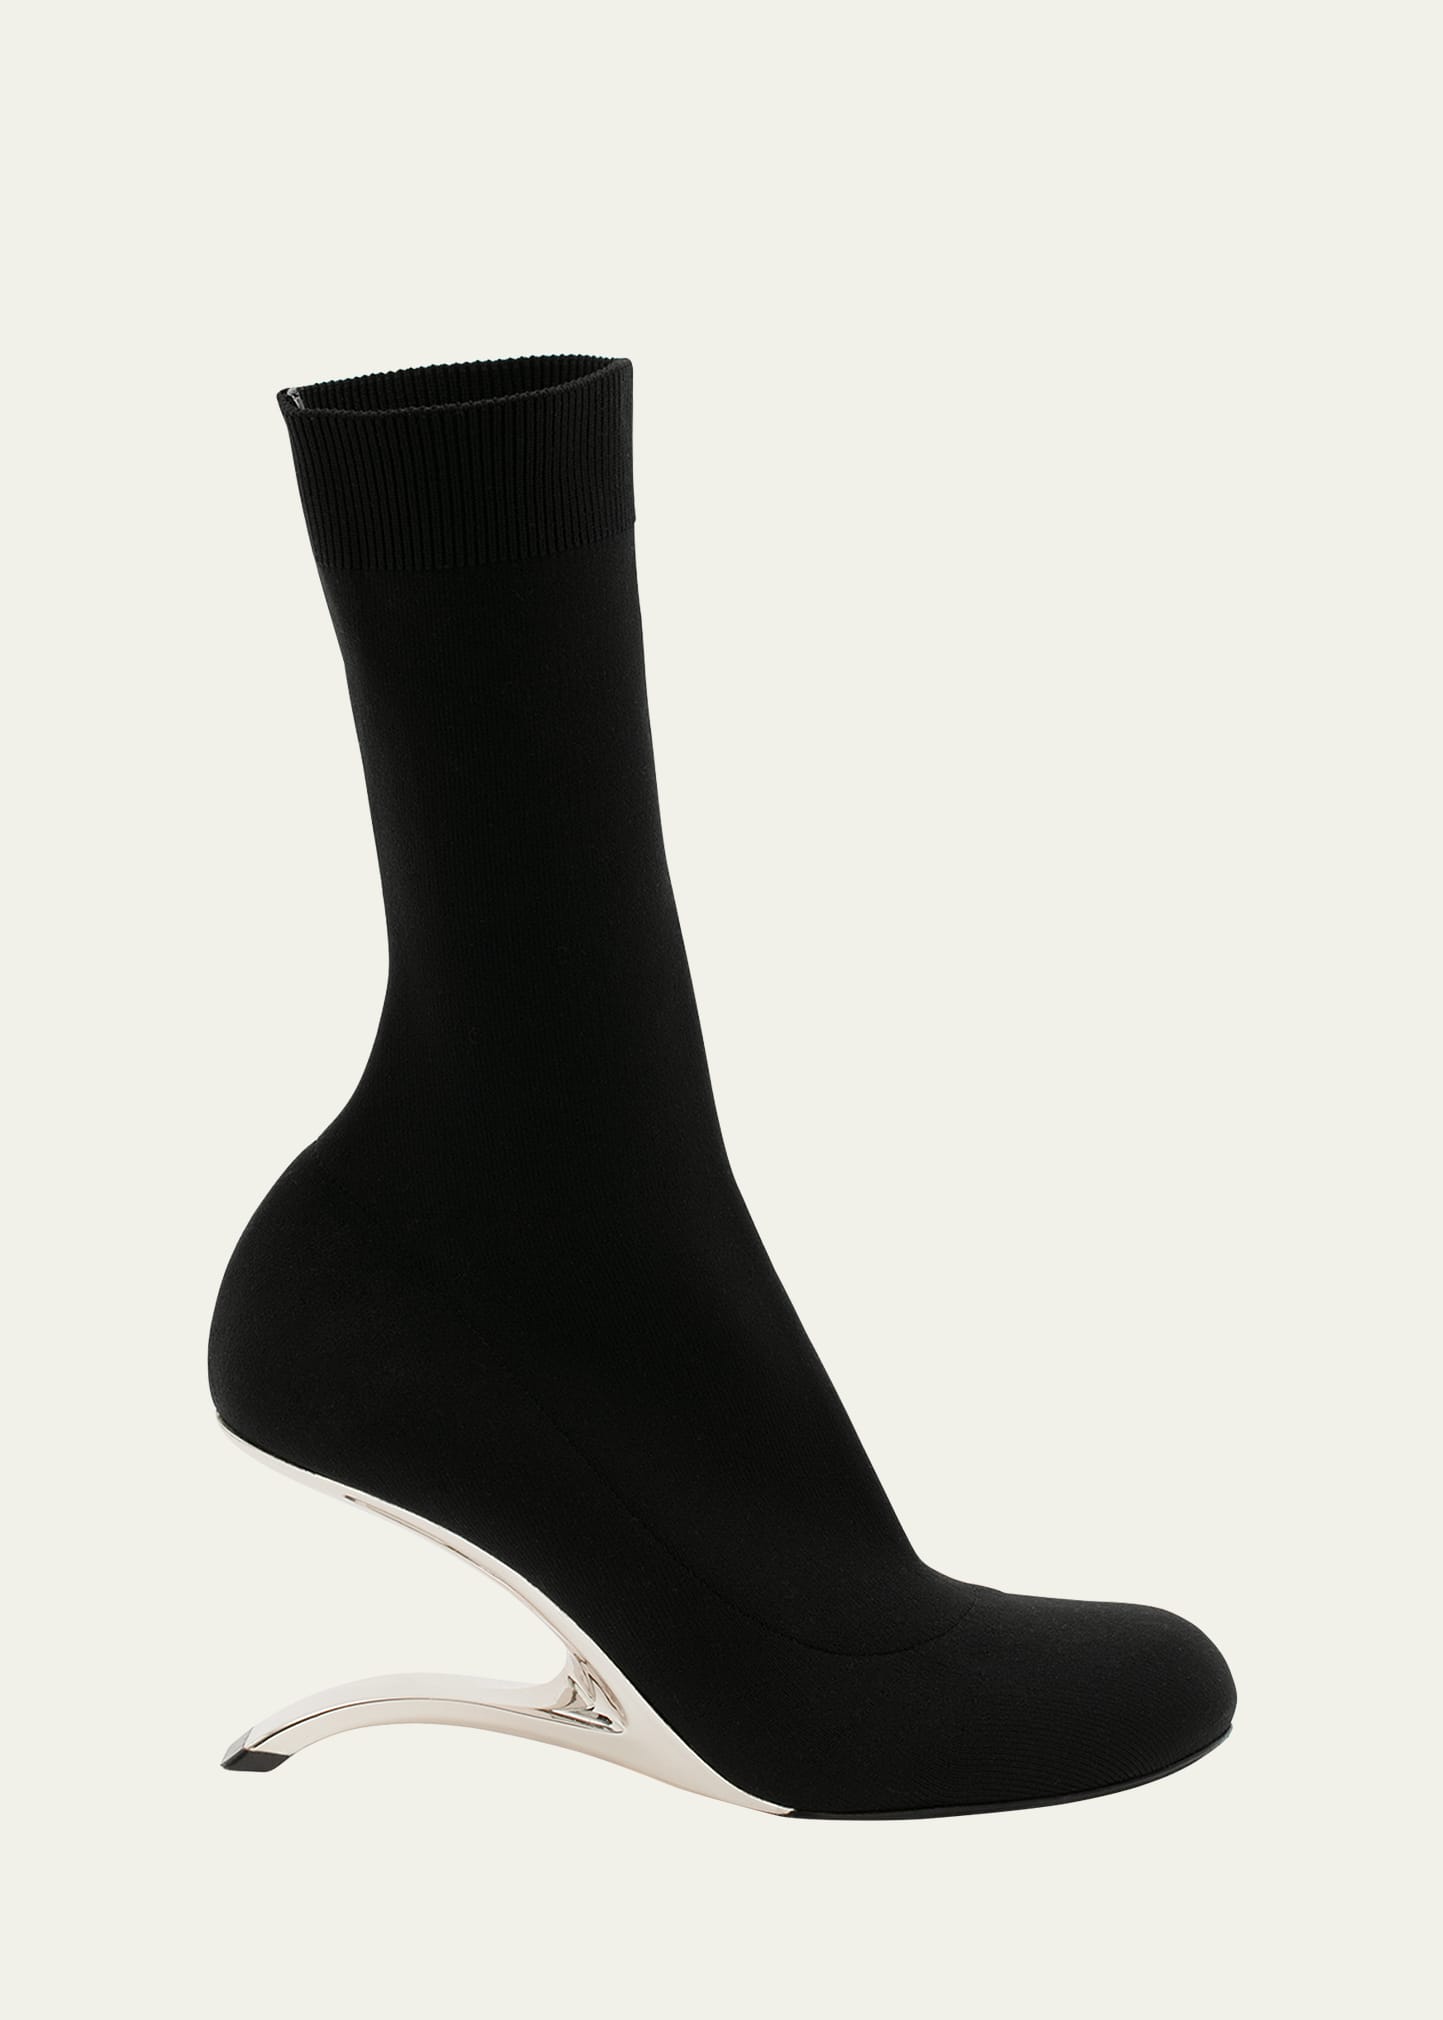 Alexander Mcqueen Arc Architectural-heel Sock Booties In Black/silver